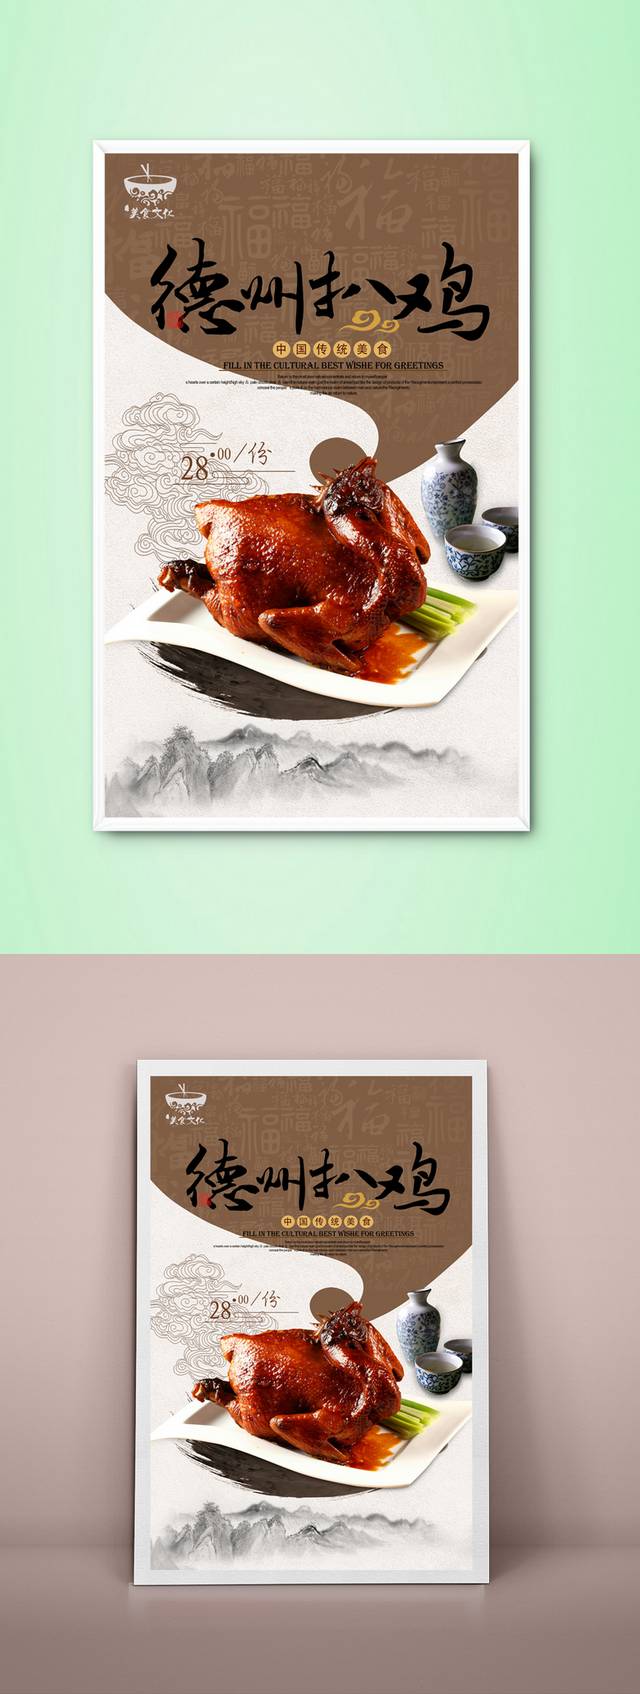 中国风德州扒鸡宣传海报设计psd